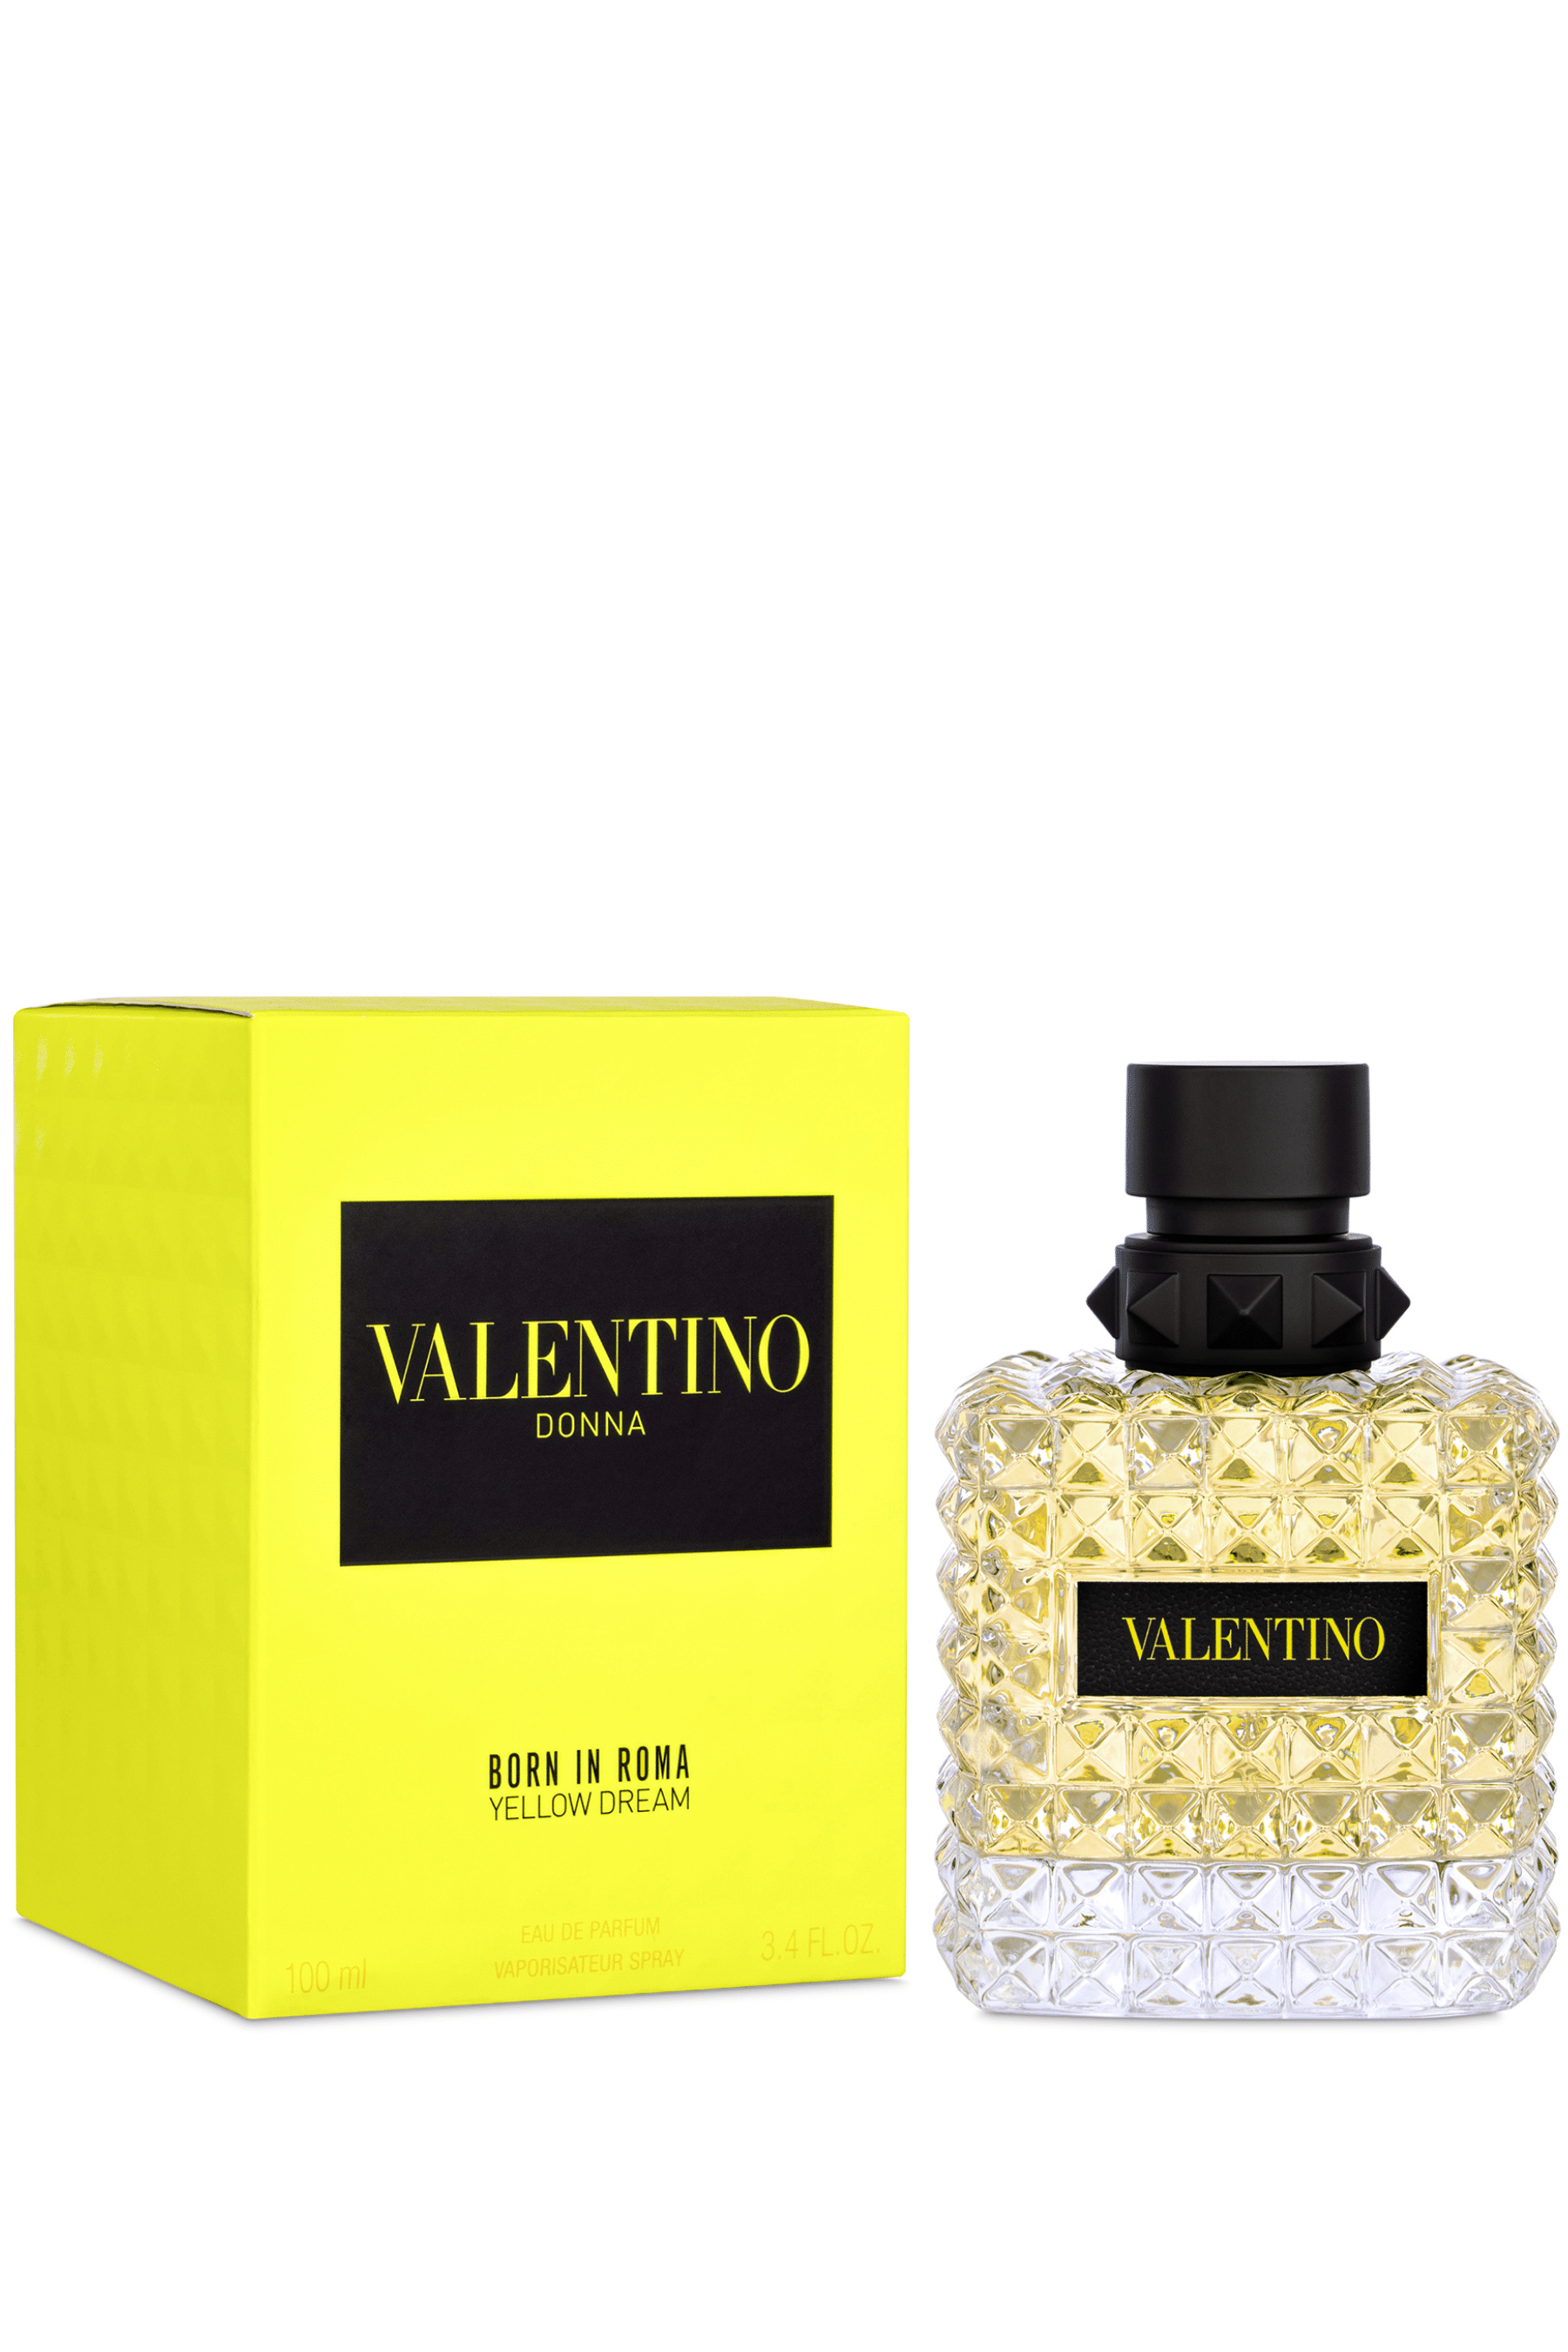 Valentino Uomo Born in Roma Yellow Dream Eau de Toilette - 3.4 oz